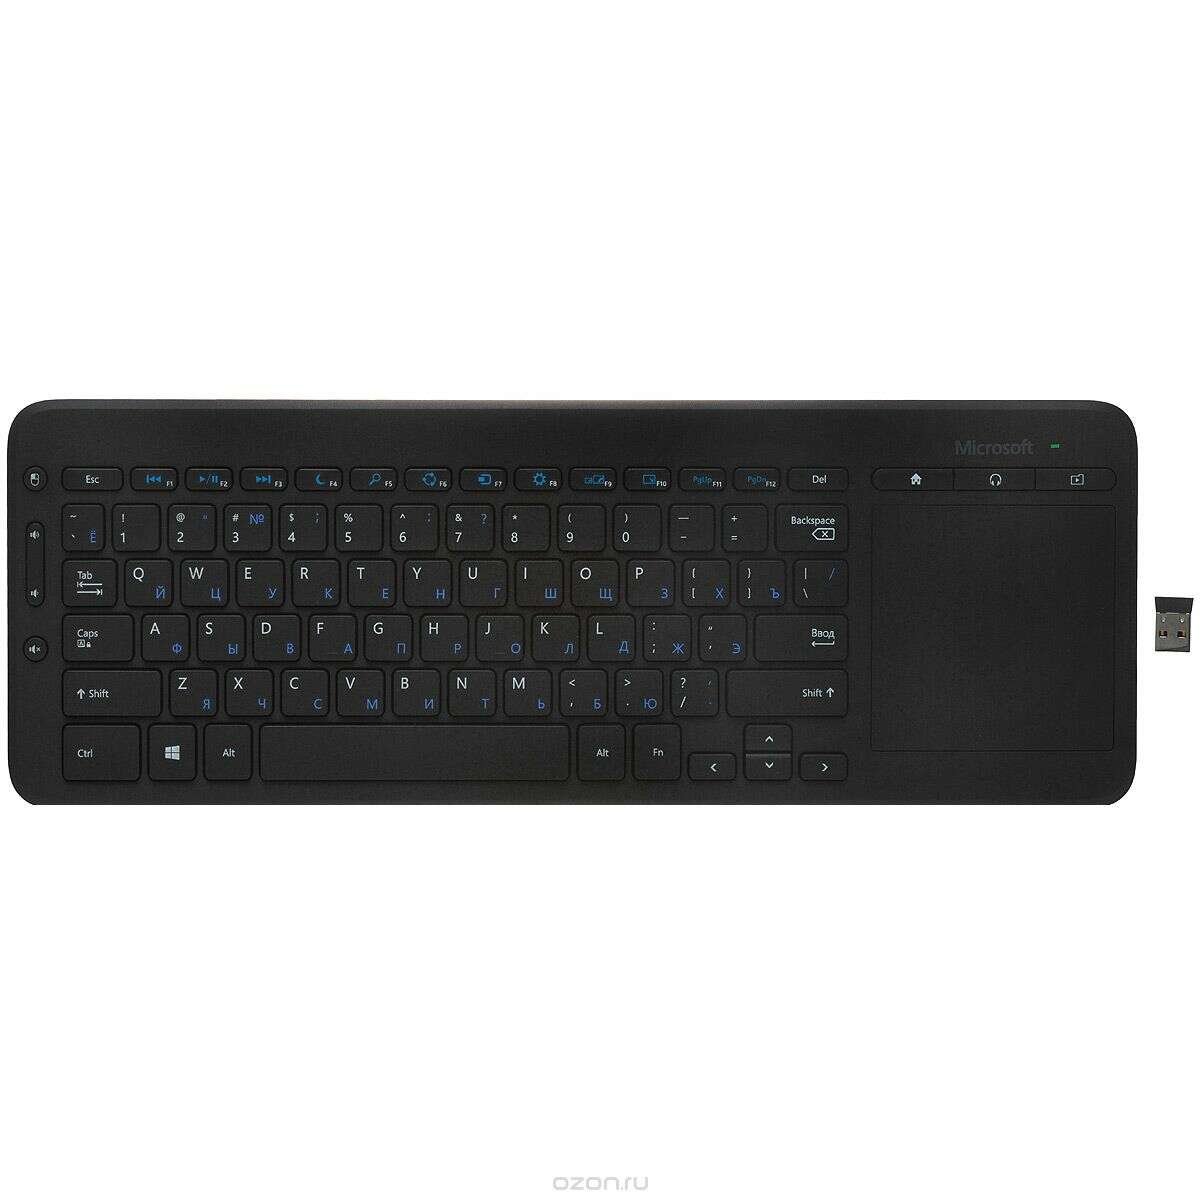 купить Keyboard Microsoft Wireless All-in-One Media USB Port в Алматы